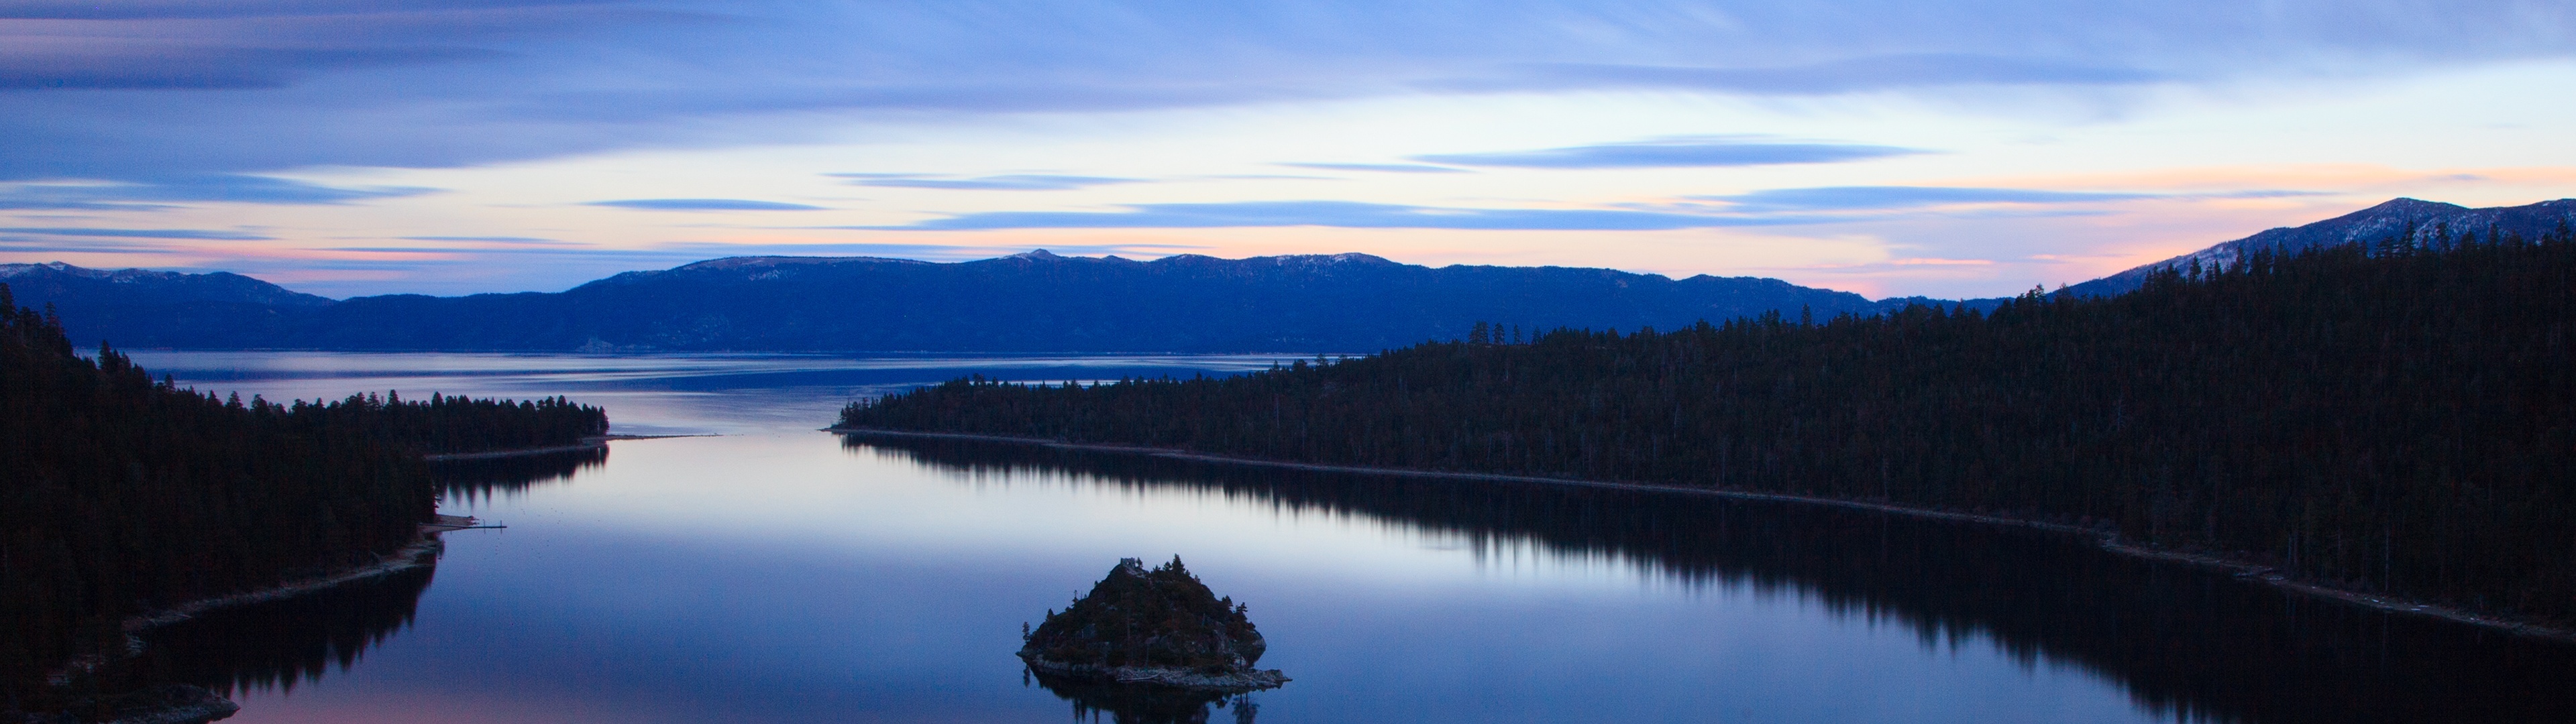 Emerald Bay, Lake Tahoe, California, 3840x1080 Dual Screen Desktop